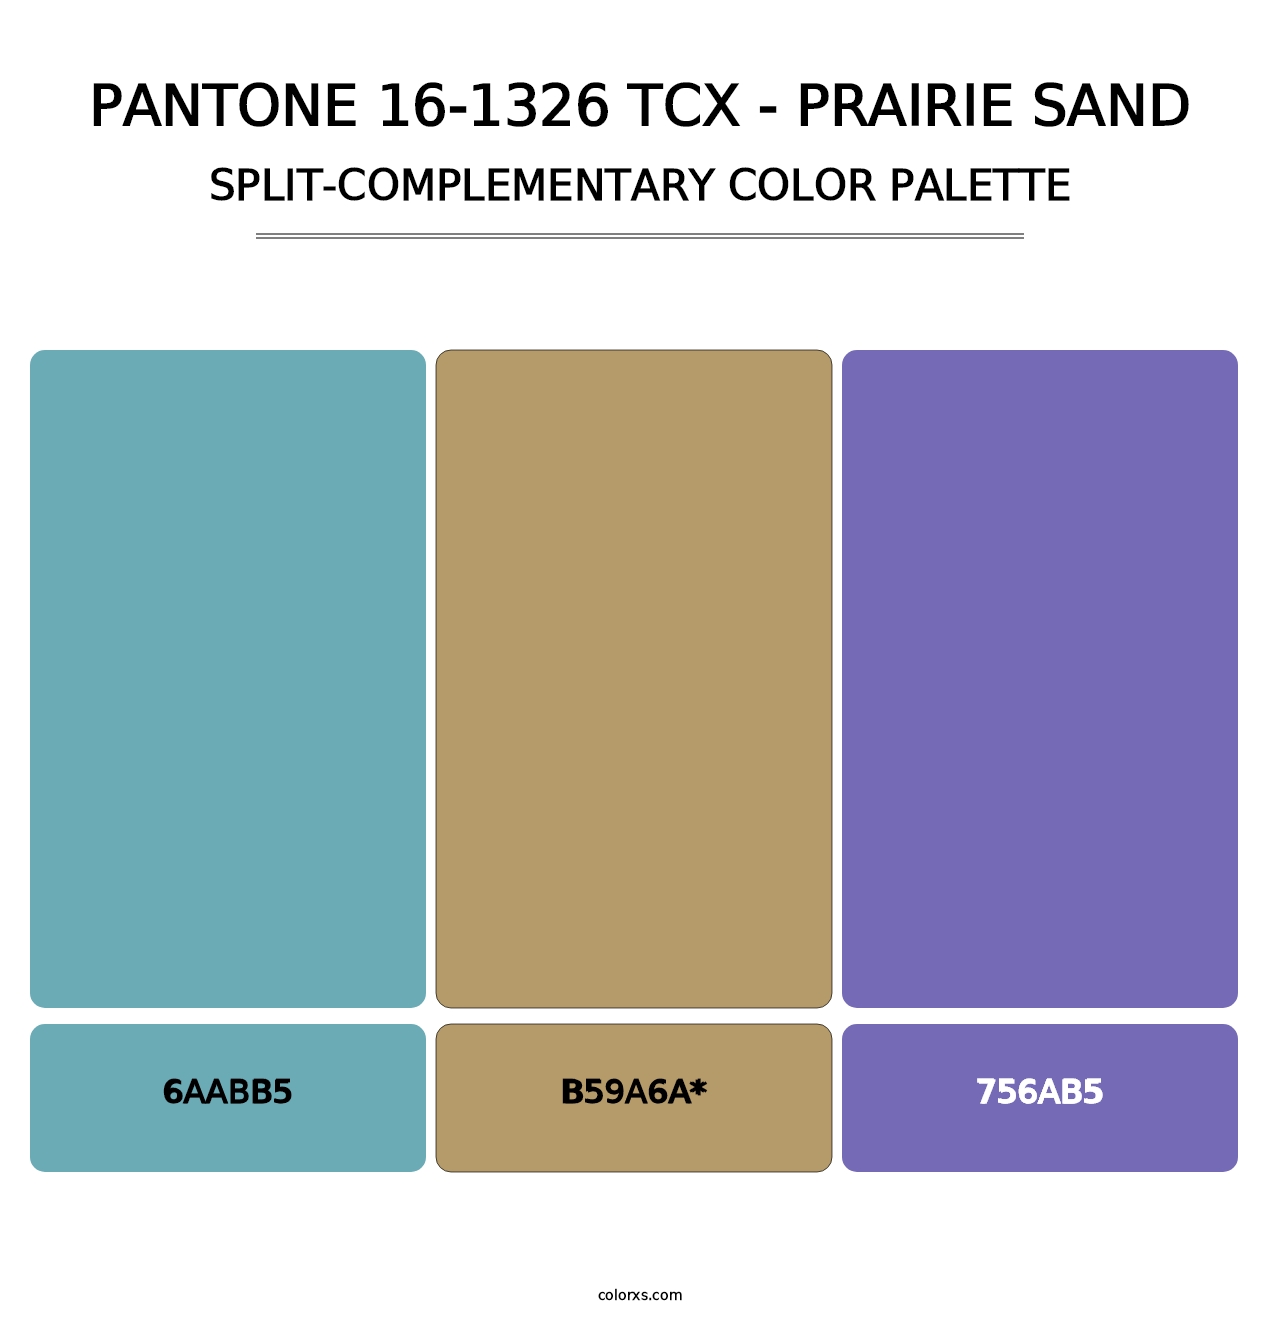 PANTONE 16-1326 TCX - Prairie Sand - Split-Complementary Color Palette